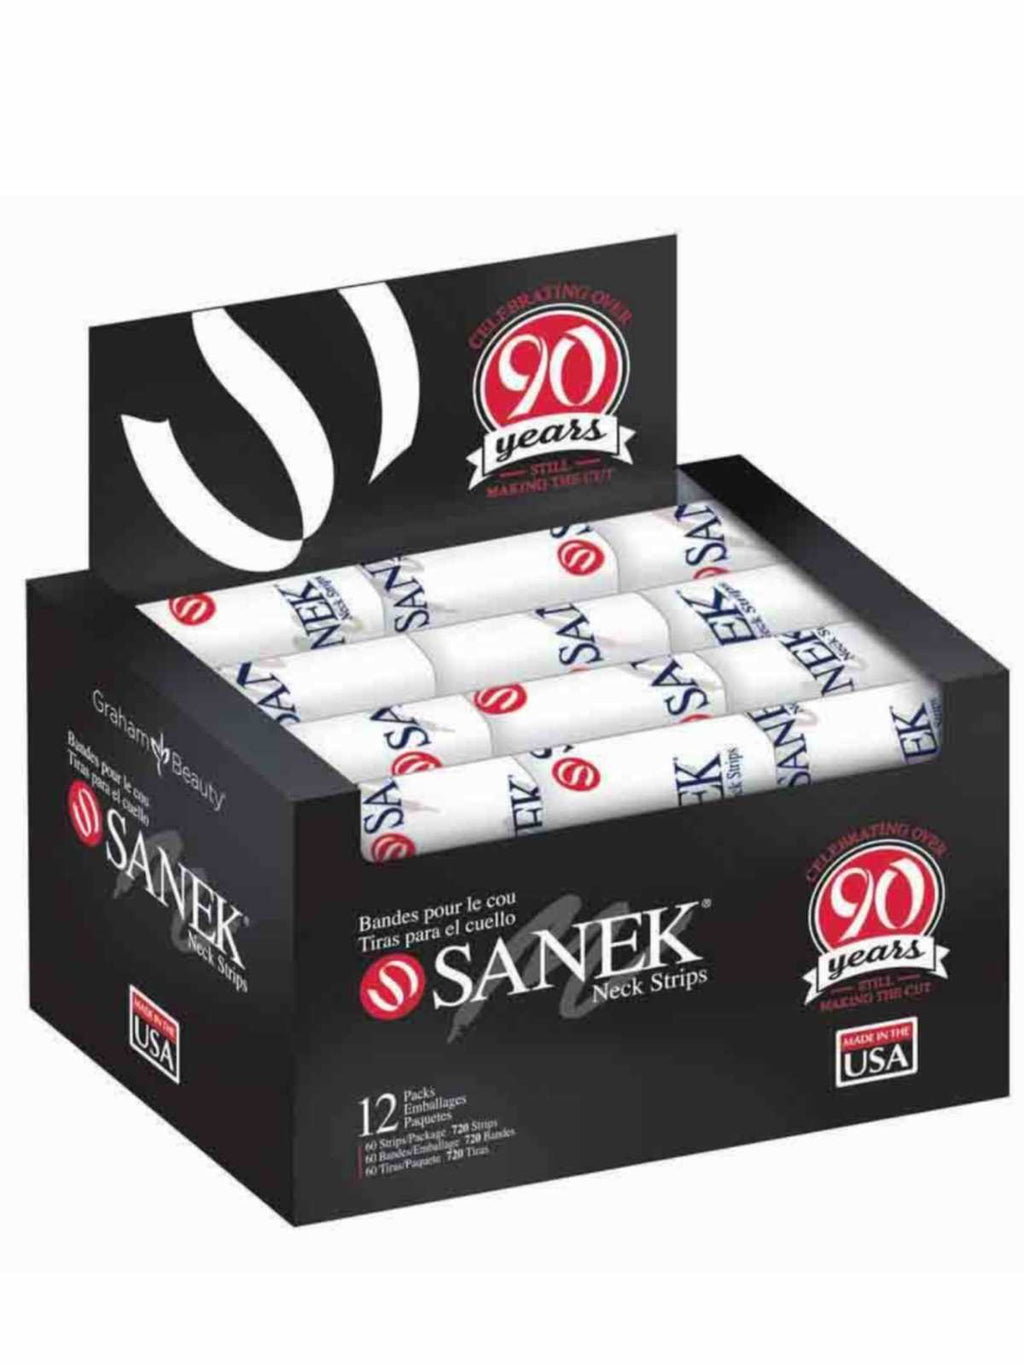 Graham SANEK Barber Salon Soft Absorbent Tissue 12 Pack of 60 Strips